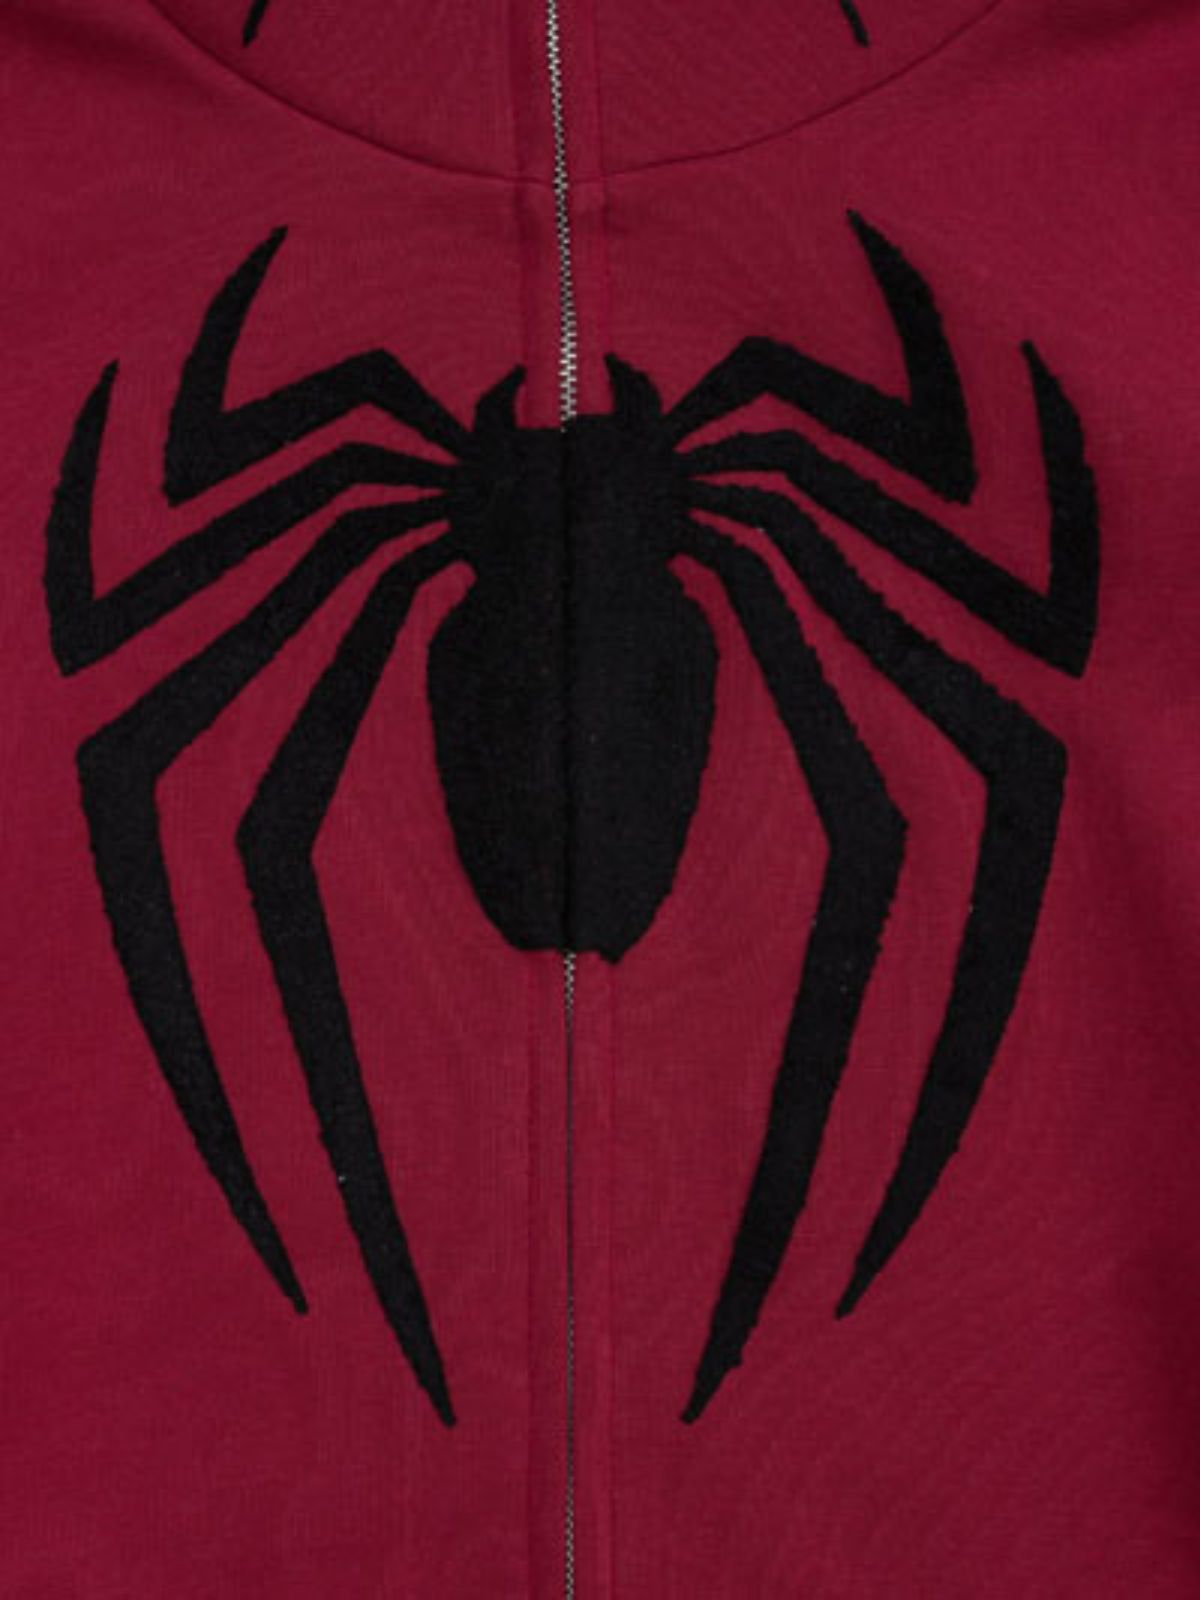 Spider-Man PS4 Zip-up Hoodie